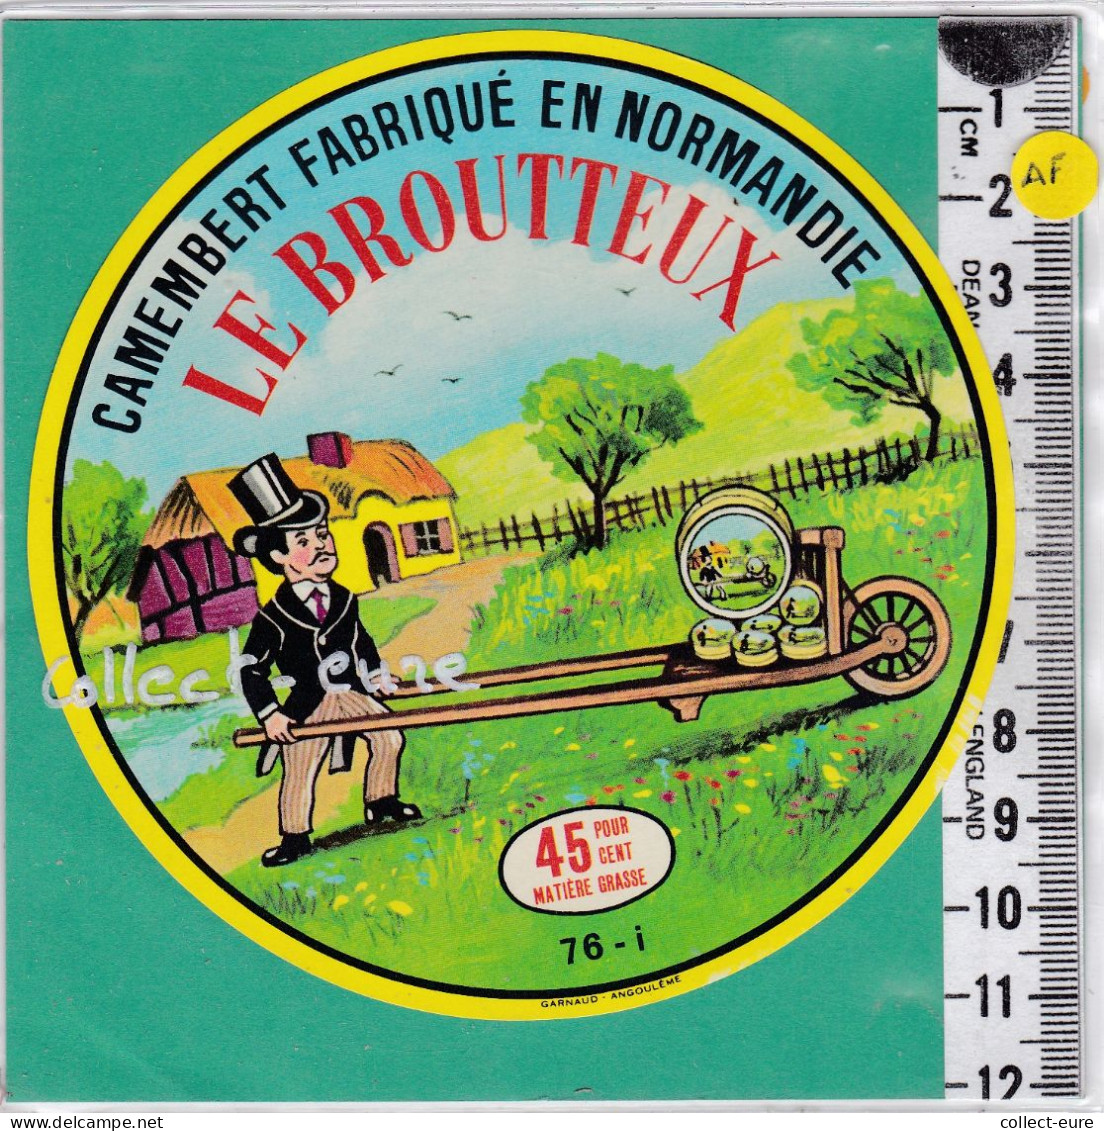 C1360 FROMAGE CAMEMBERT LE BROUTTEUX MOULINEAUX SEINE MARITIME BROUETTE - Käse